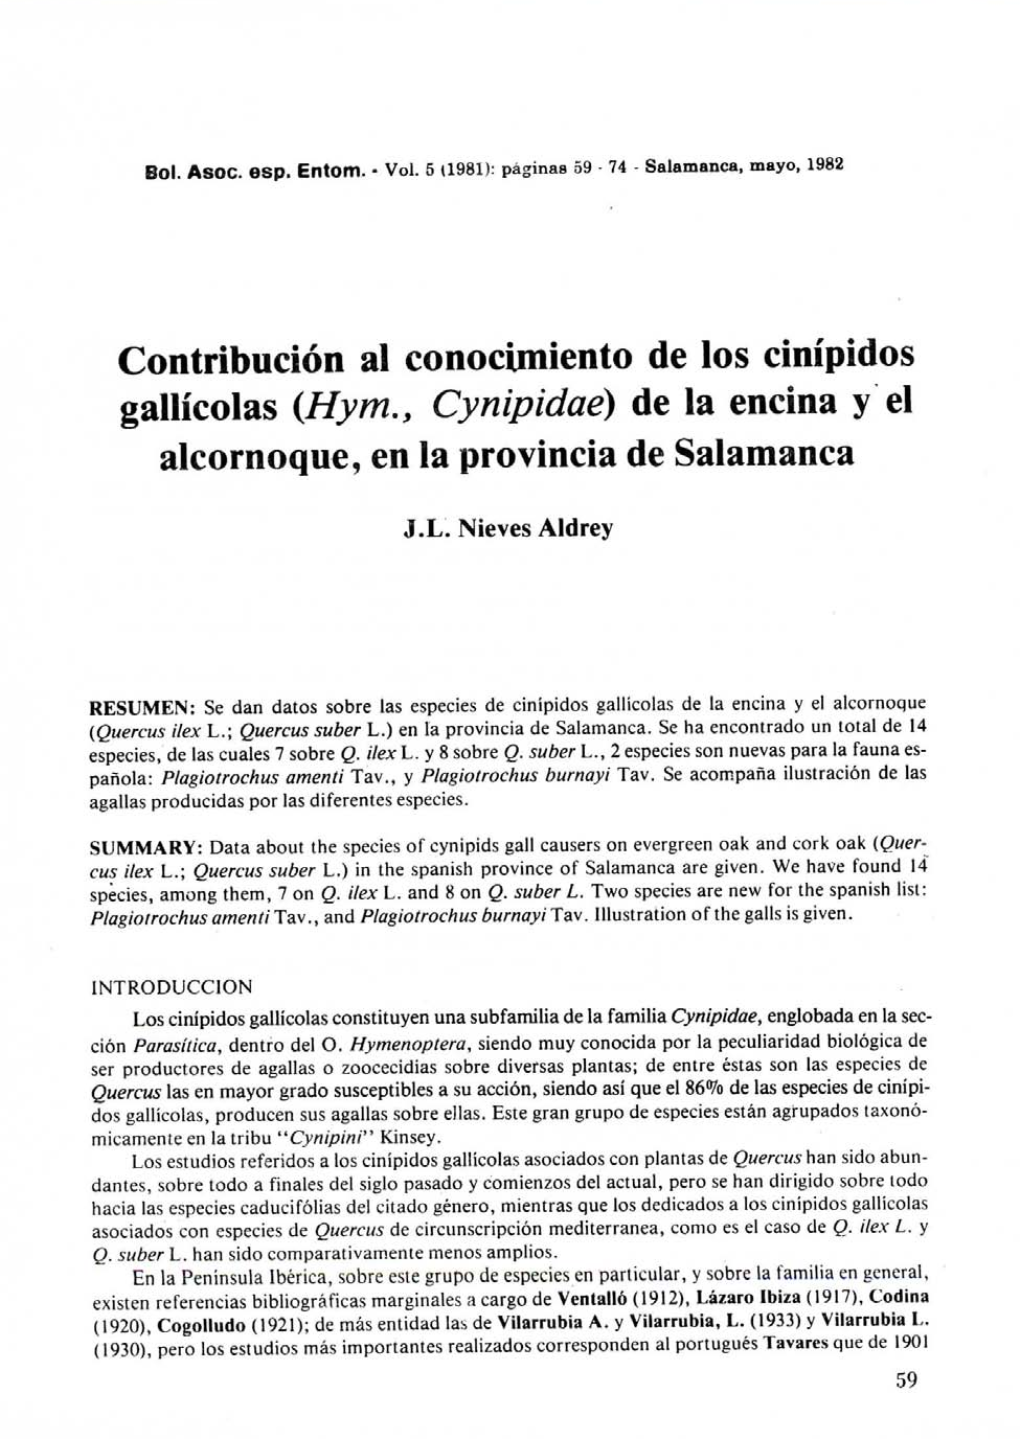 Contribución Al Conocimiento De Los Cinípidos Gallícolas (Hym., Cynipidae) De La Encina Y El Alcornoque, En La Provincia De Salamanca